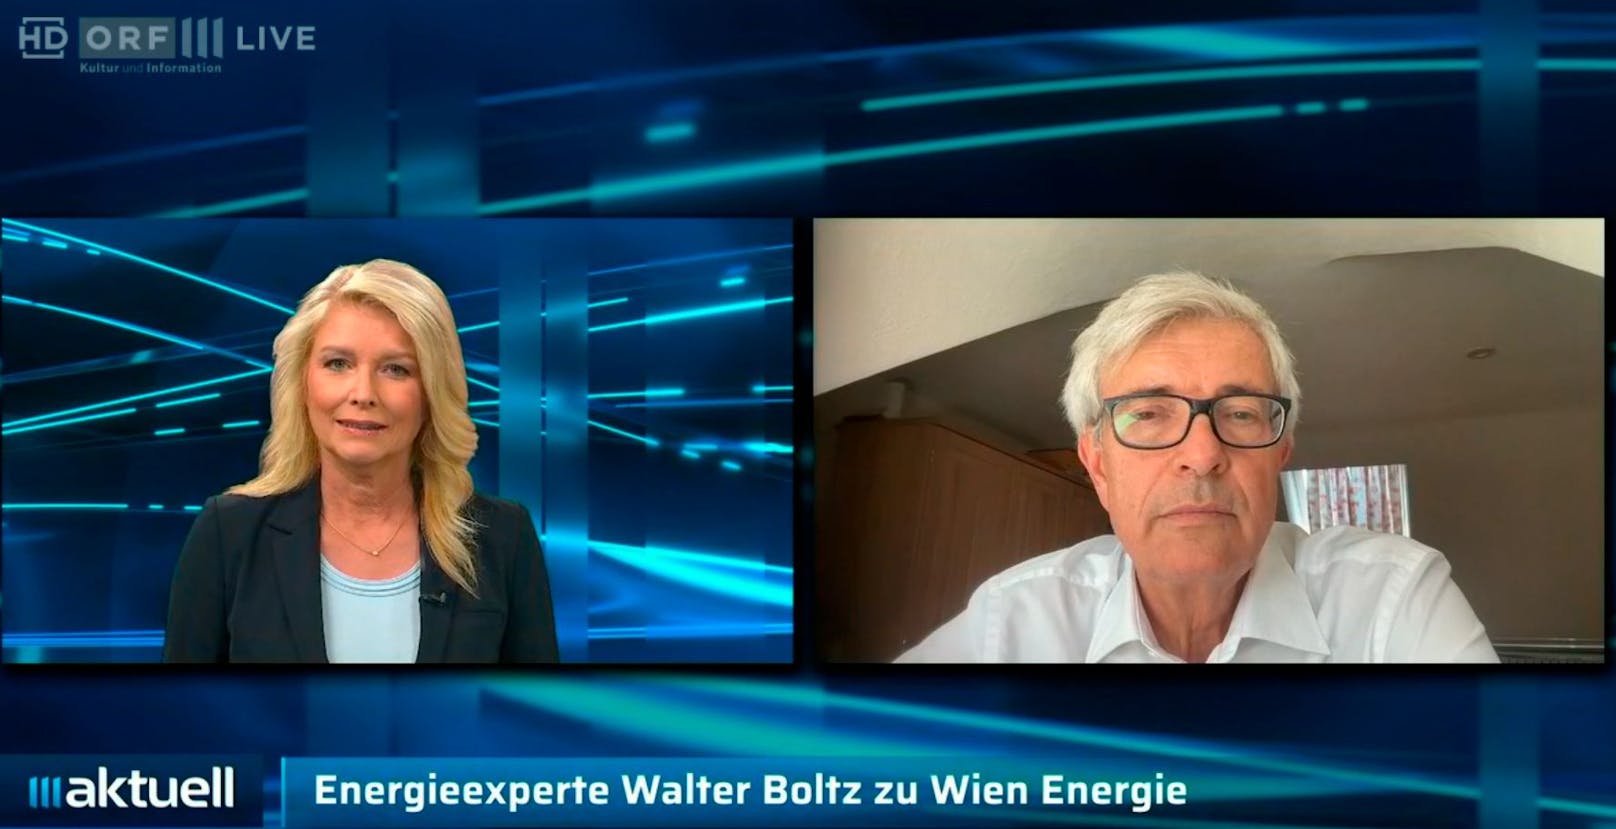 Walter Boltz im Tele-Interview mit ORF III zur finanziellen Not der Wien Energie am 29. August 2022.